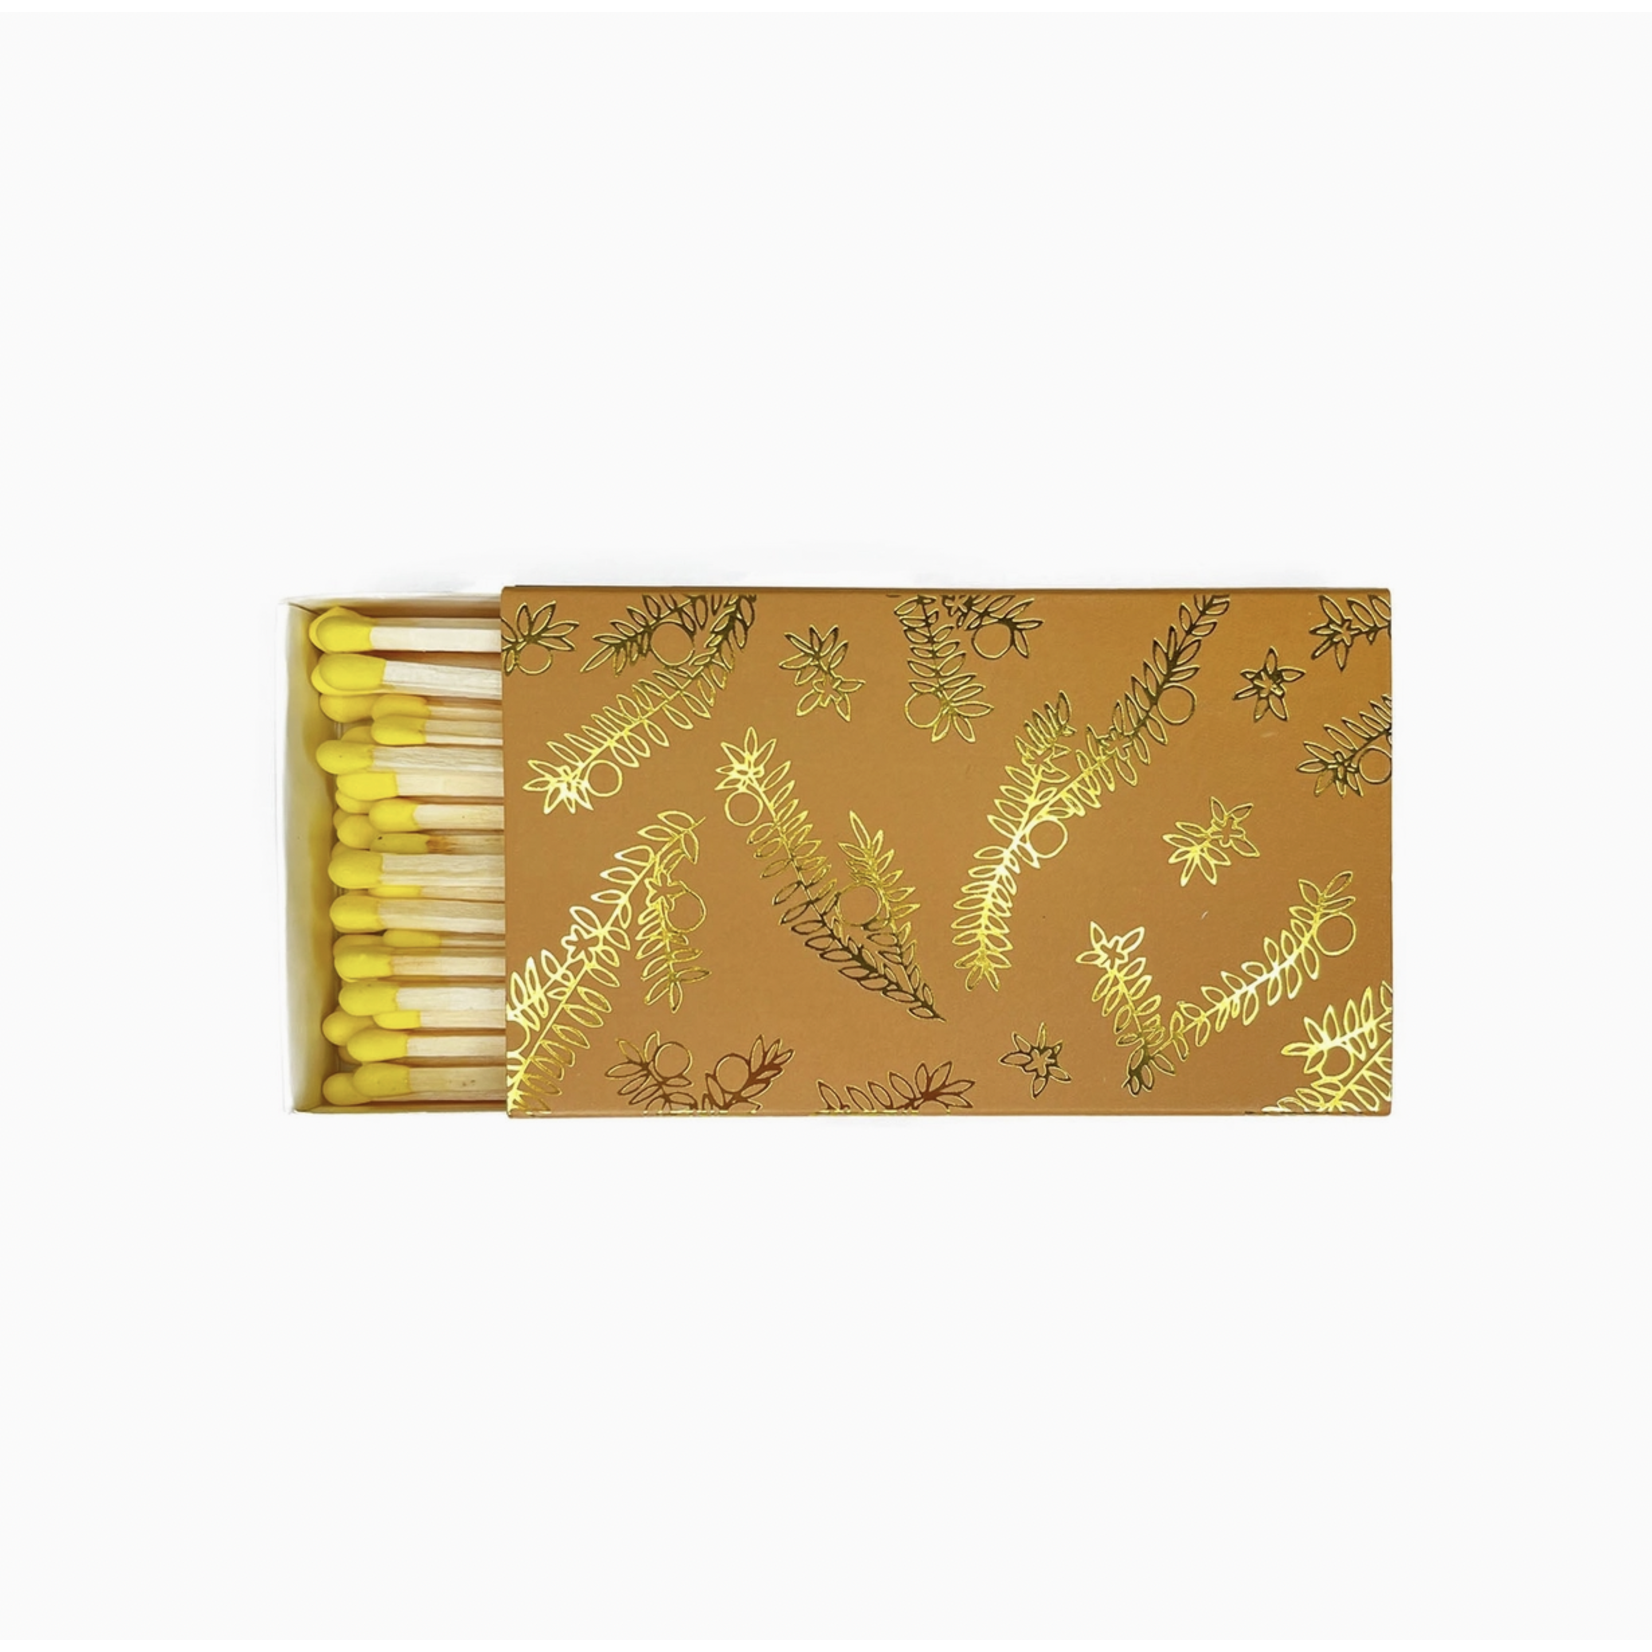 Golden Gems Large Match Box - Goldenrod and Gold Foil Orange Blossom